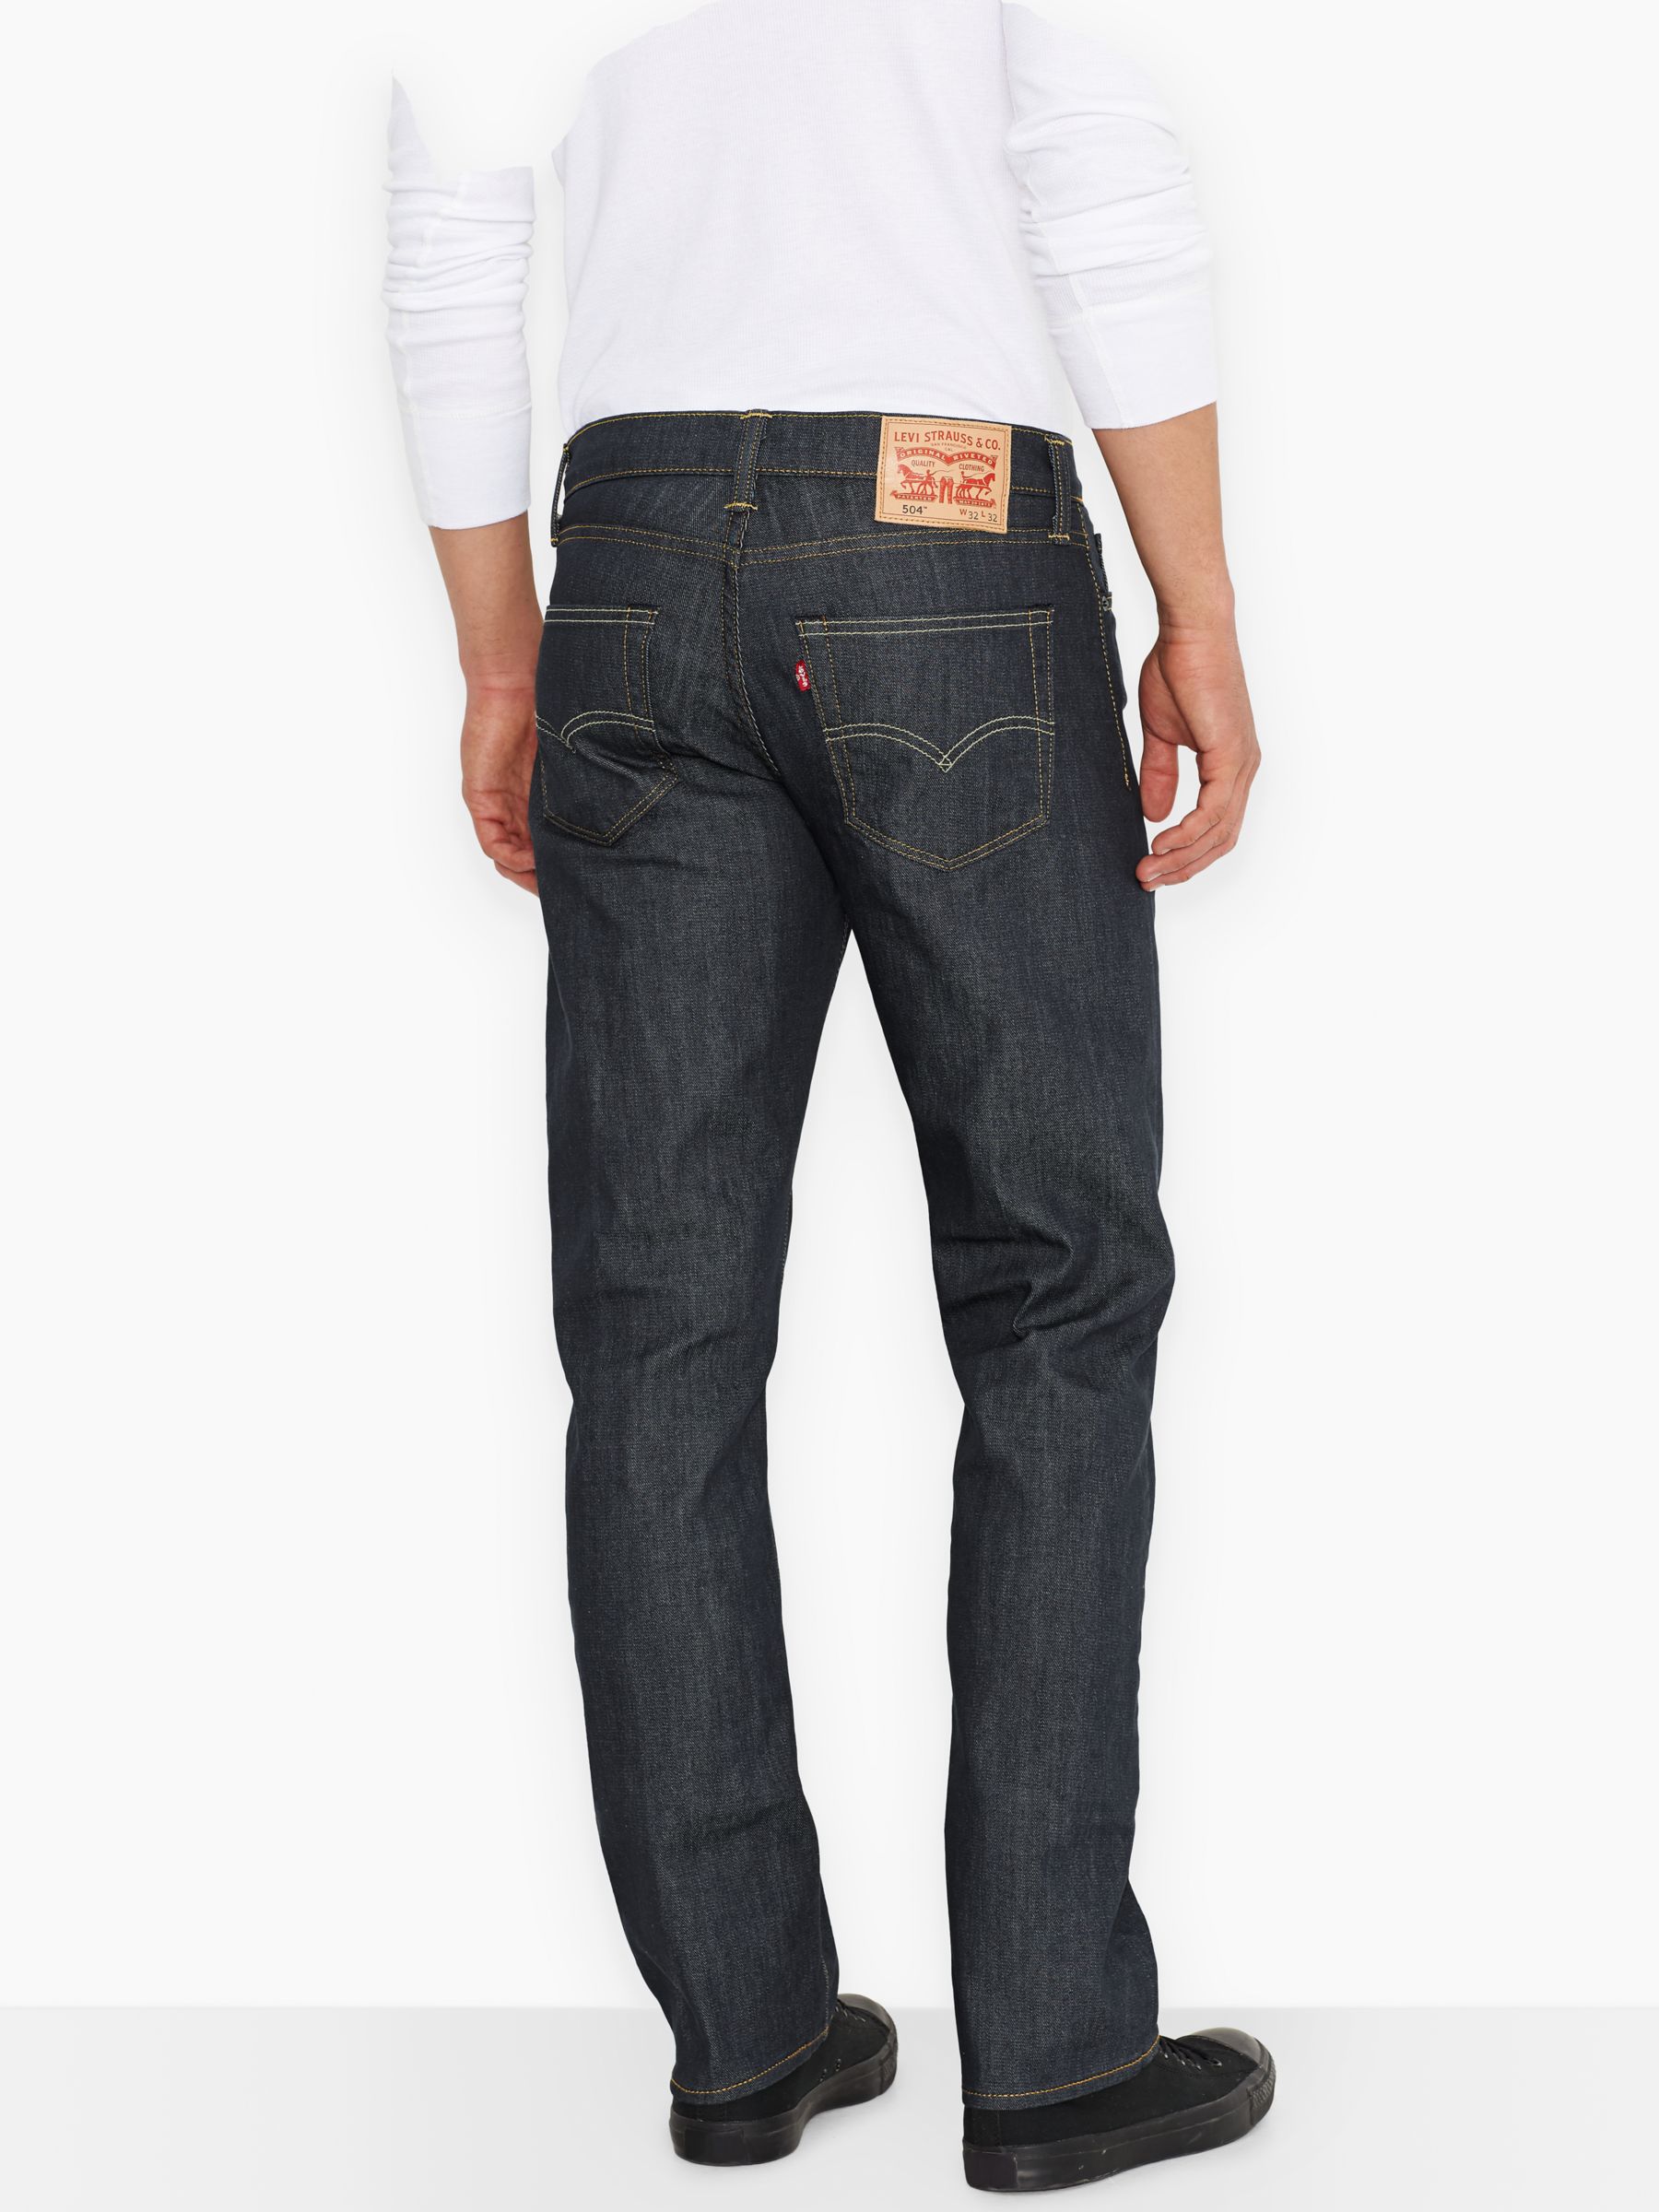 buy levi 504 jeans online